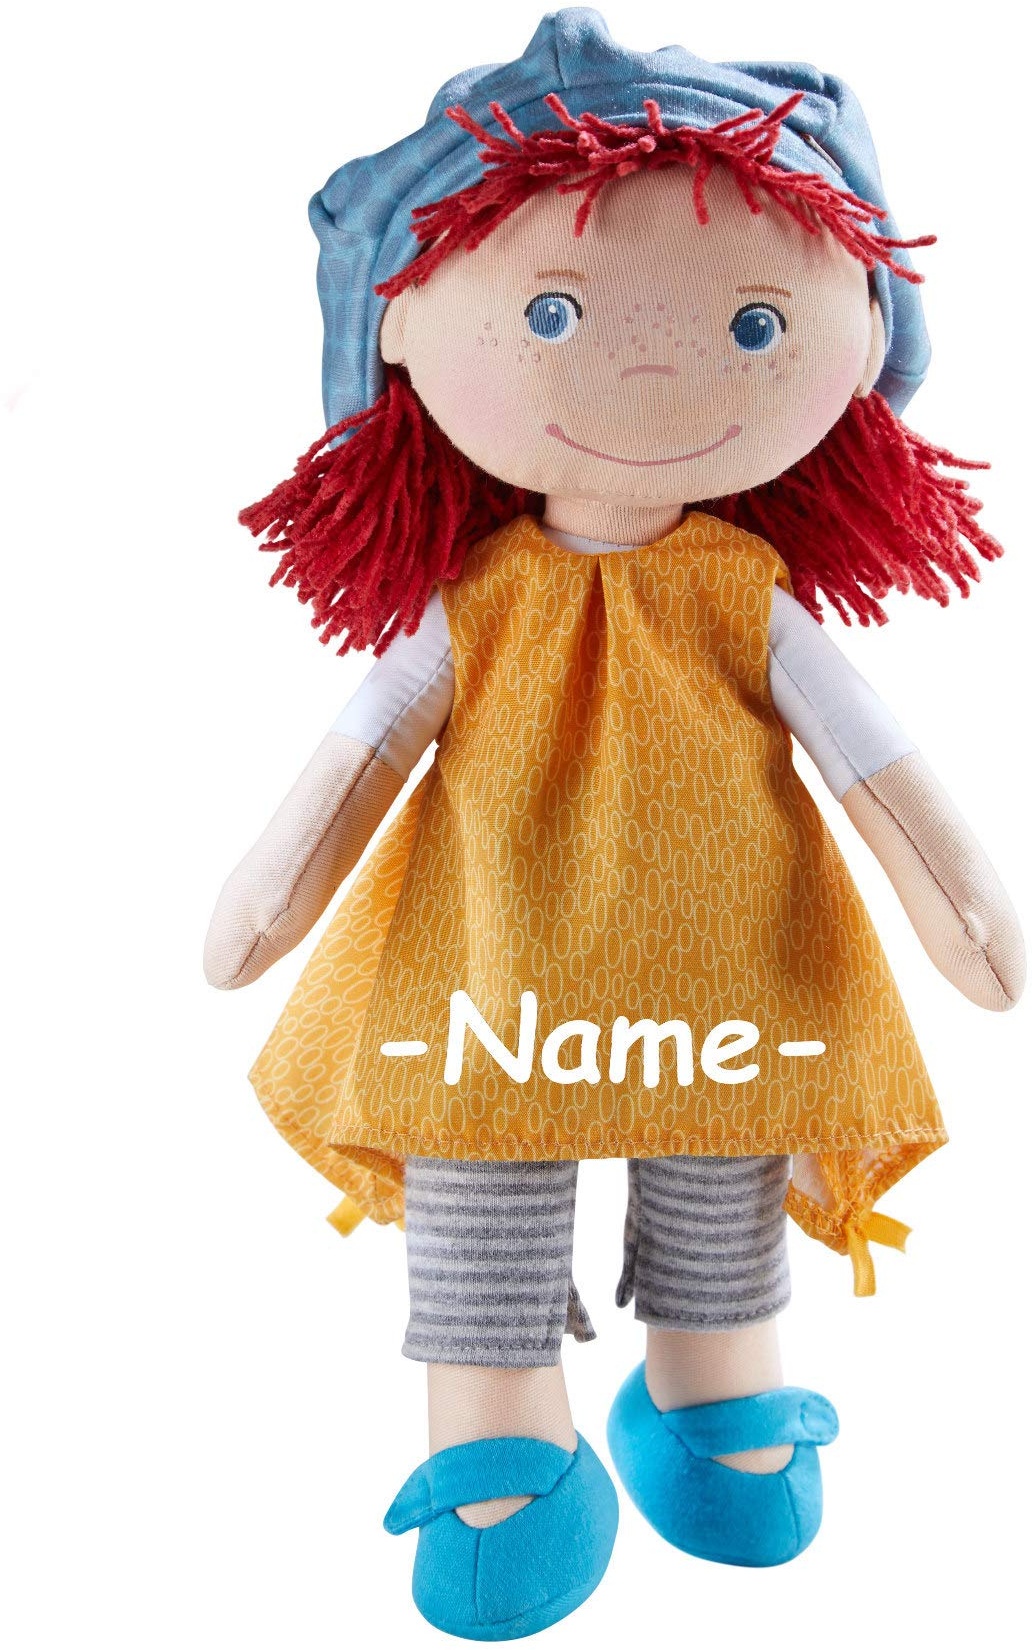 Haba Puppe Weichkörper individuell Bestickt mit Name | Kleine Puppe mit Stoffkörper ca. 30 cm | Babypuppe ab 1 Jahr für Jungs und Mädchen | Haba Puppe waschbar & anziehbar | Geschenk für Geburt